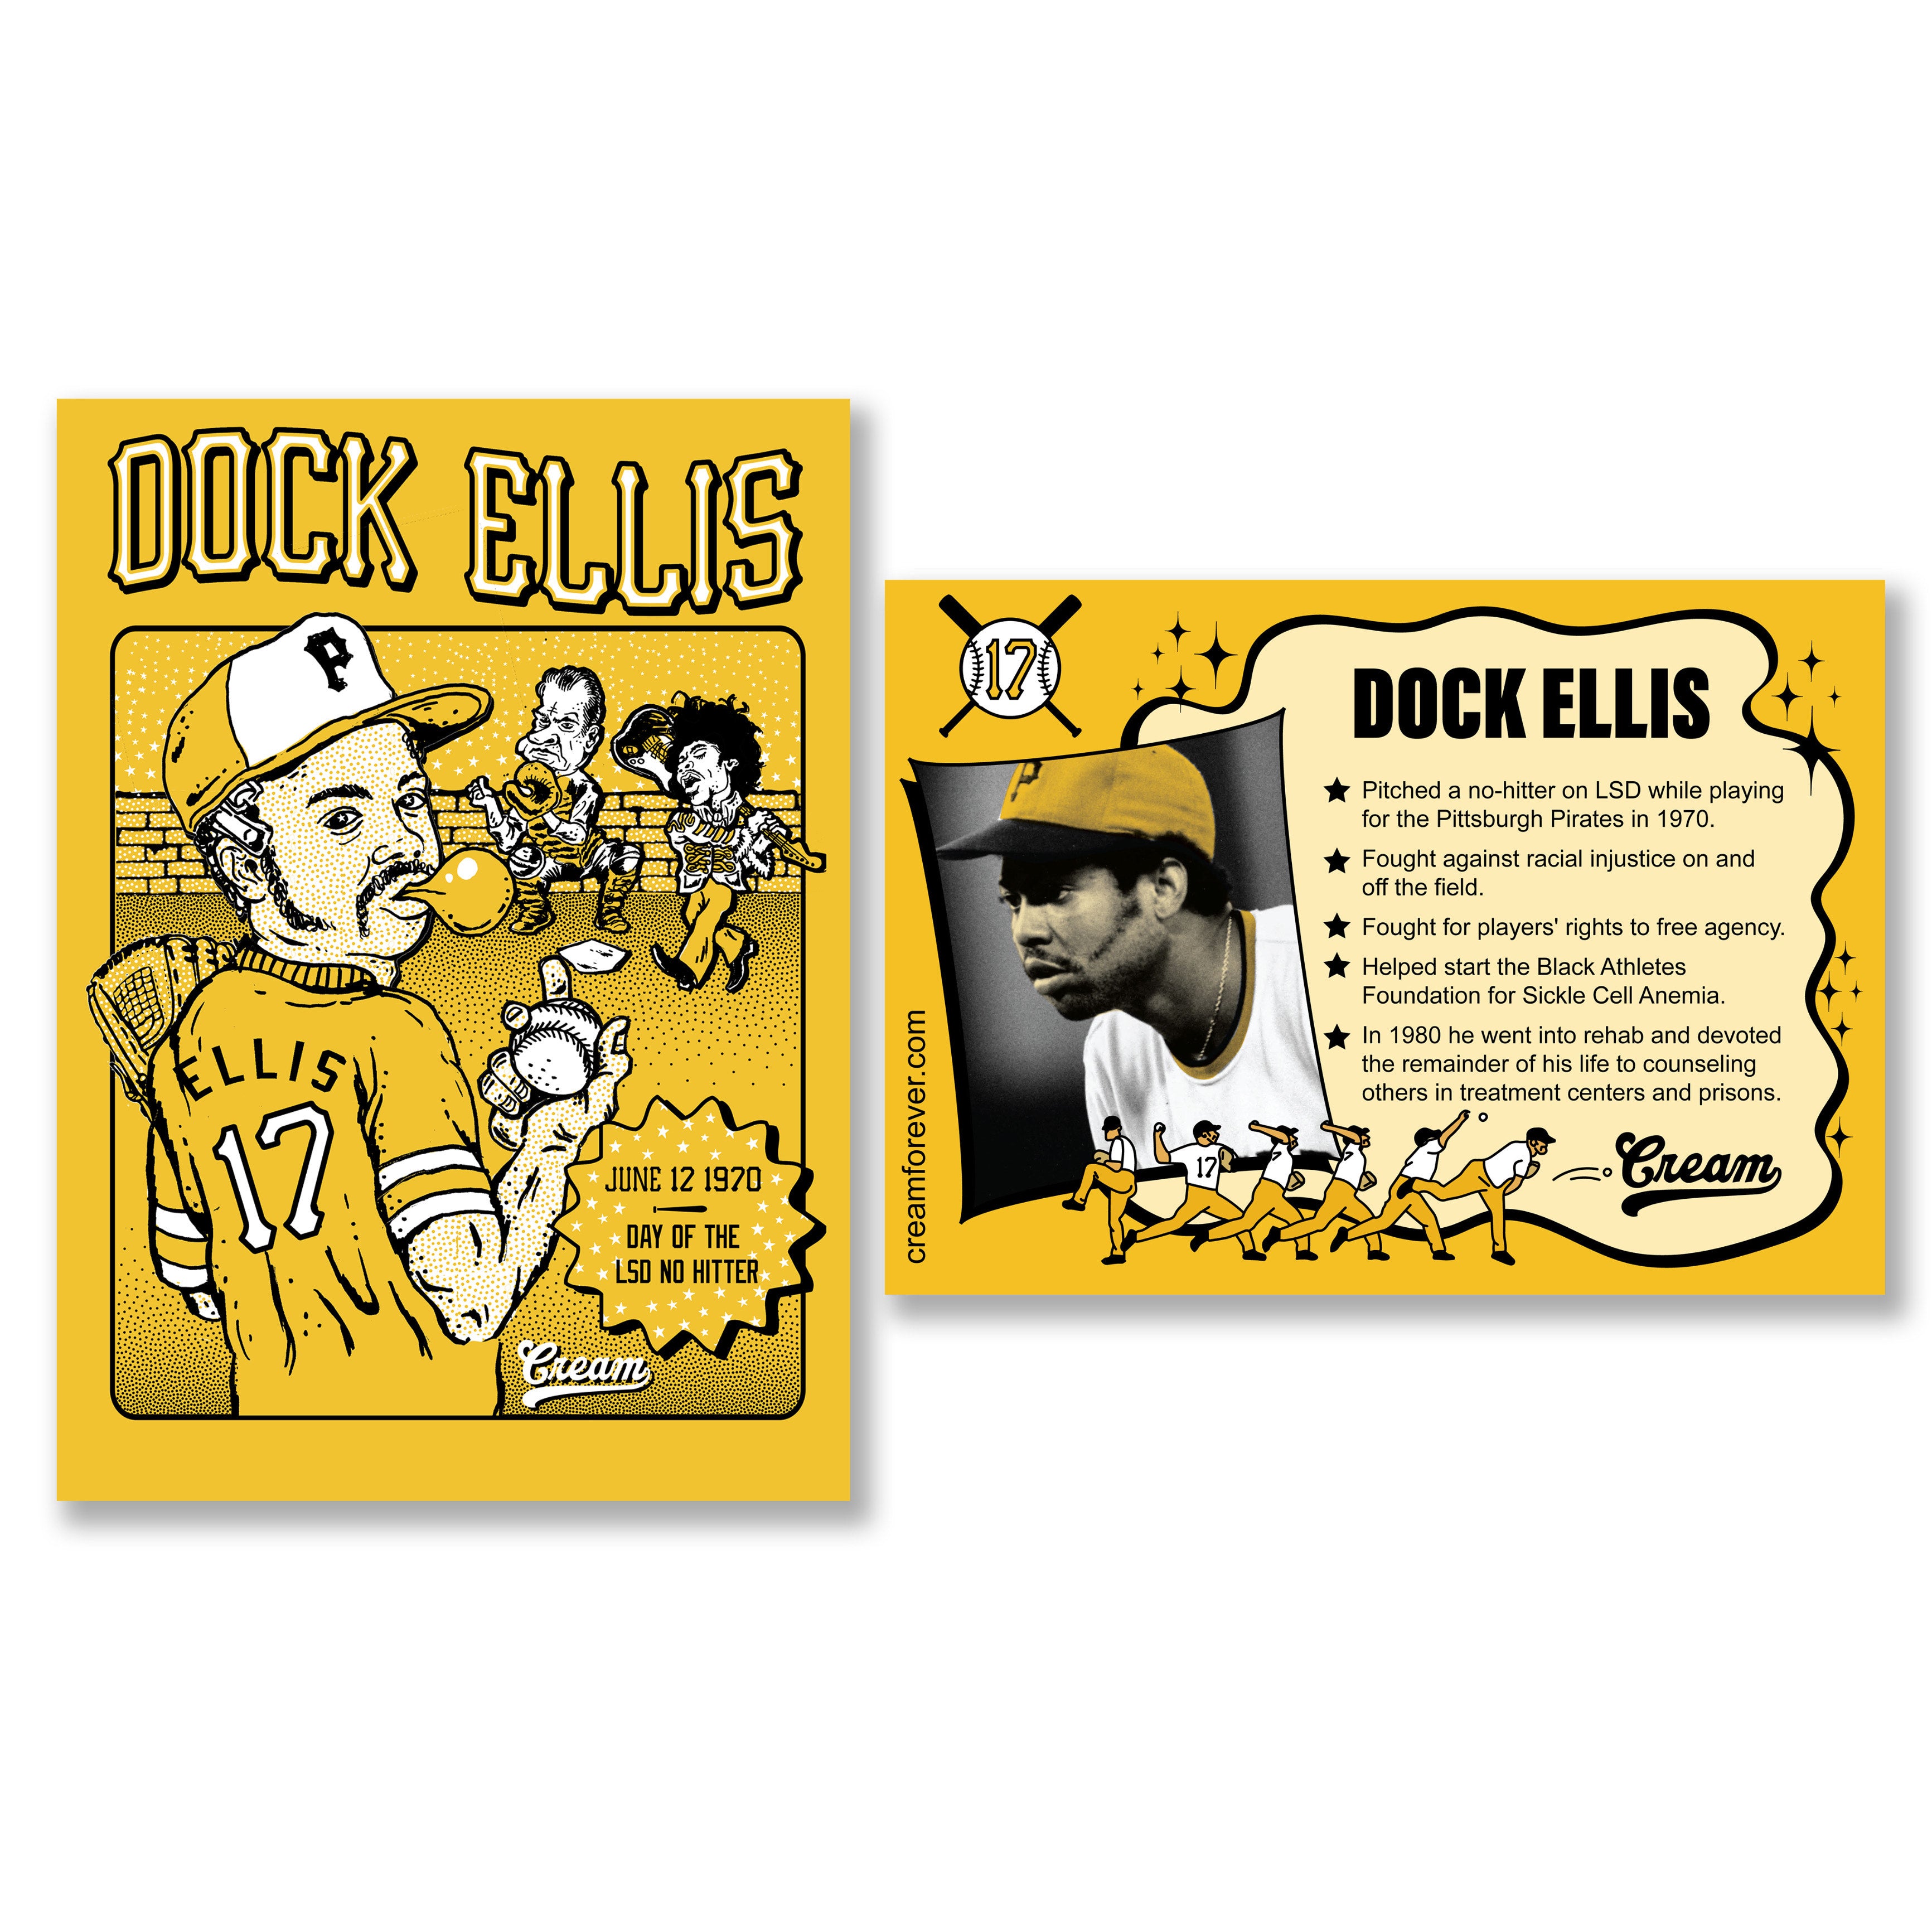 A PACK OF CARDS: 1973 dock ellis